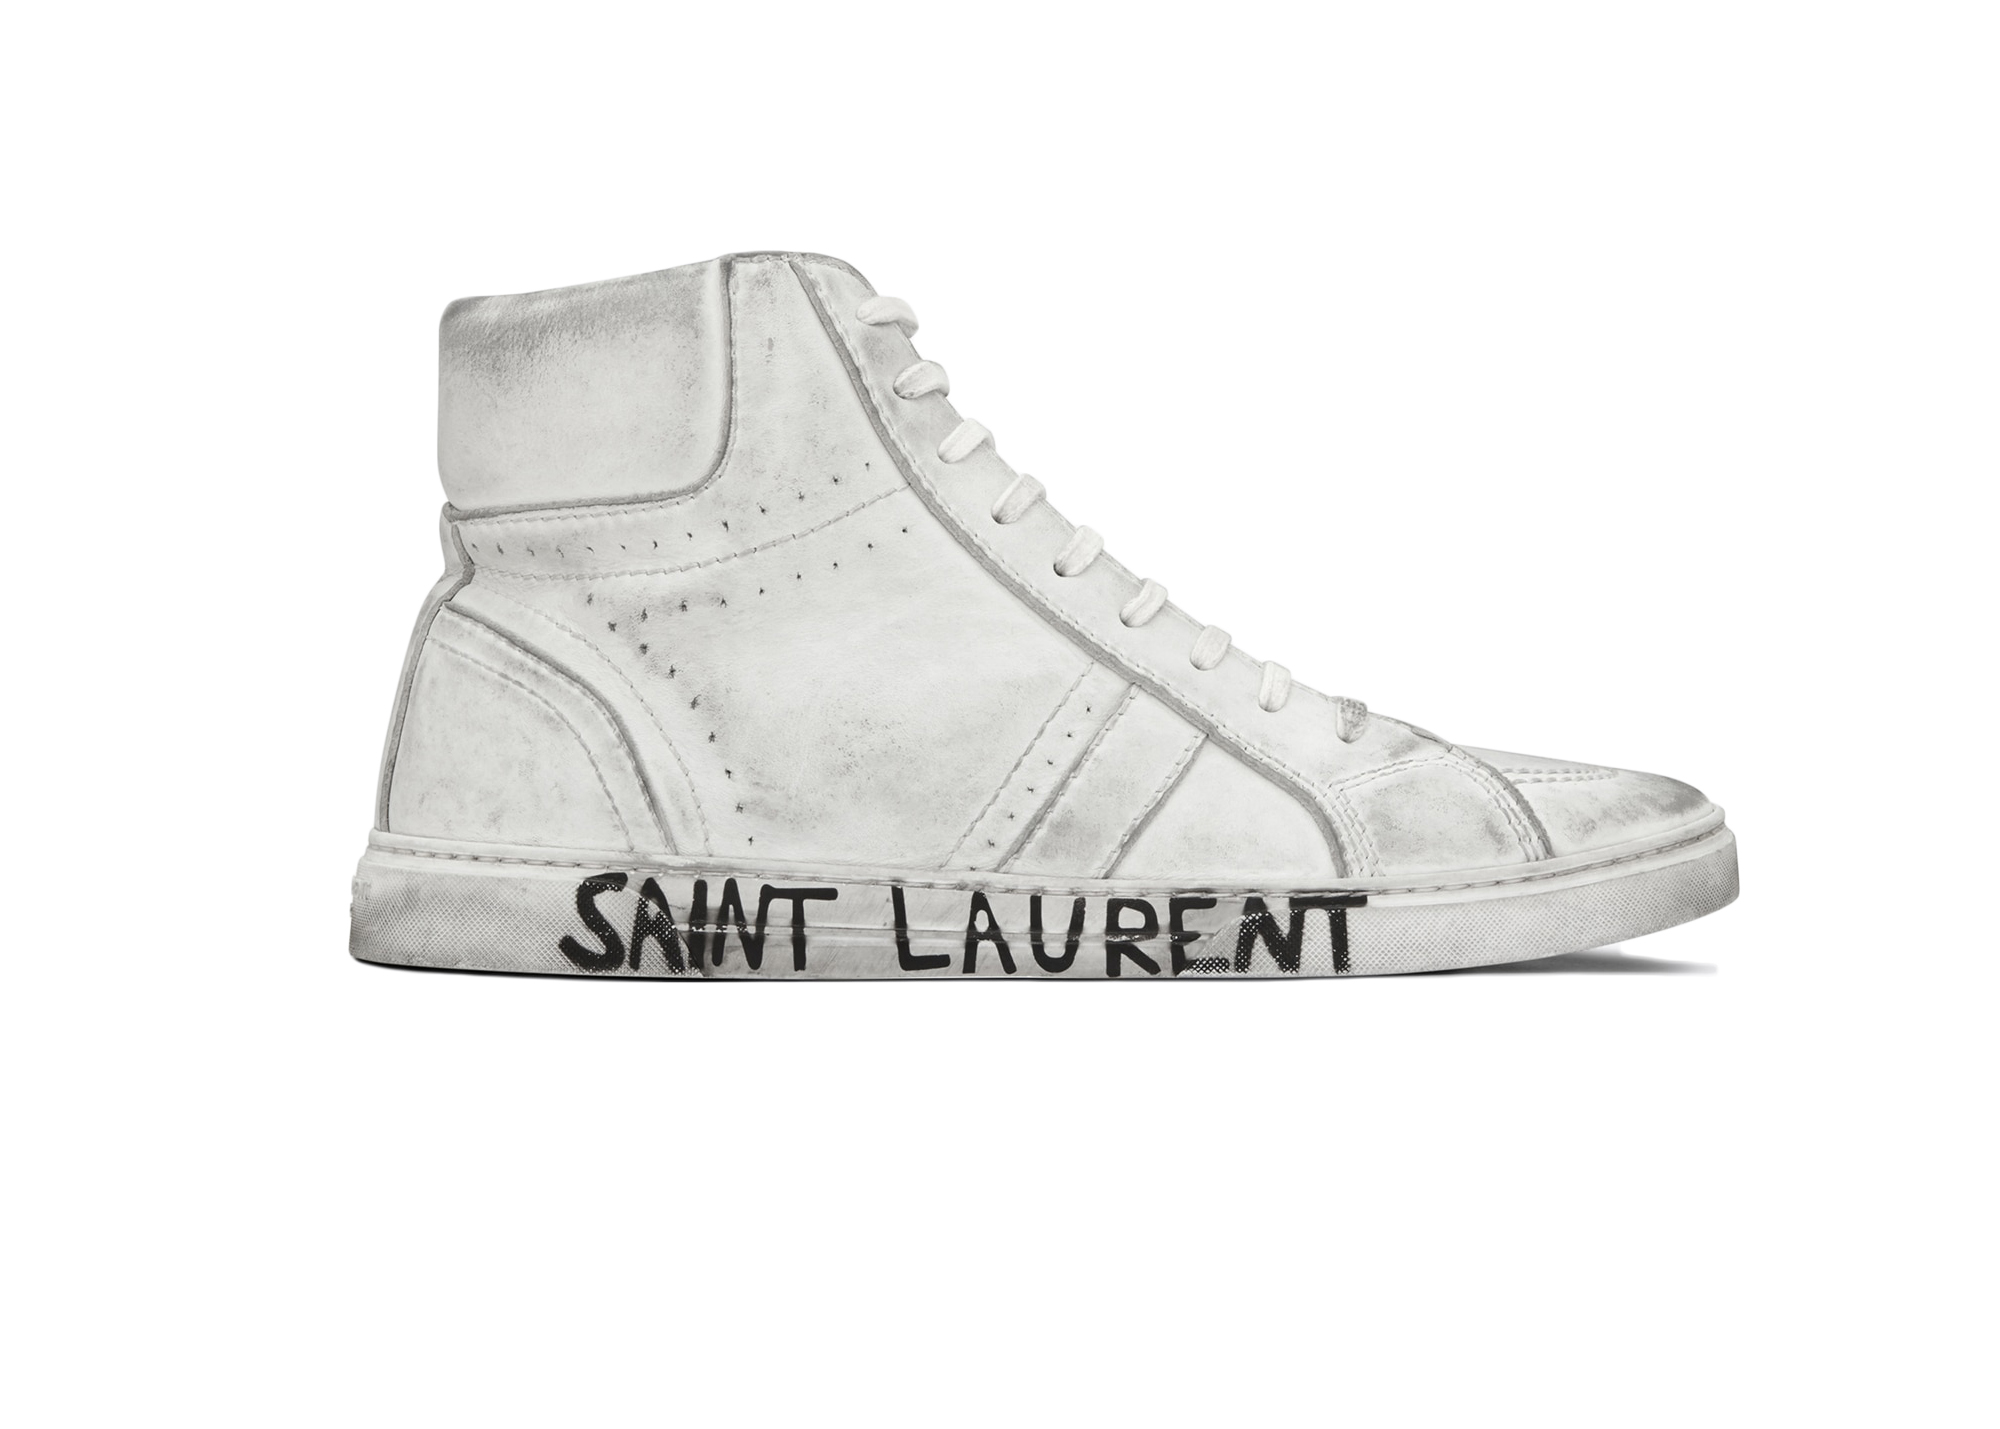 Buy Saint Laurent Shoes & Deadstock Sneakers